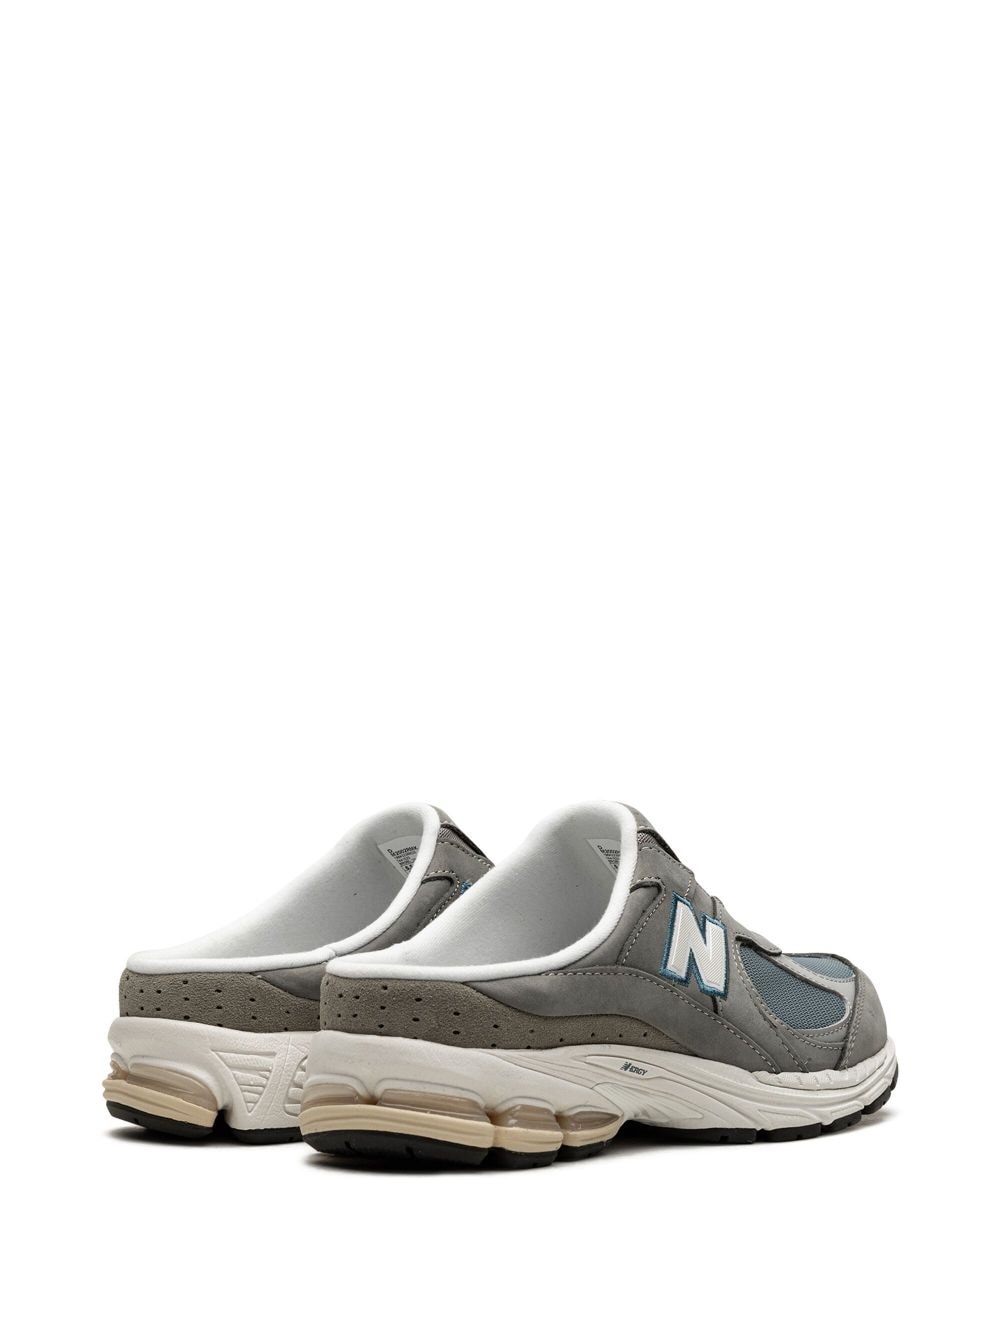 2002R "Marblehead" sneaker mules - 3